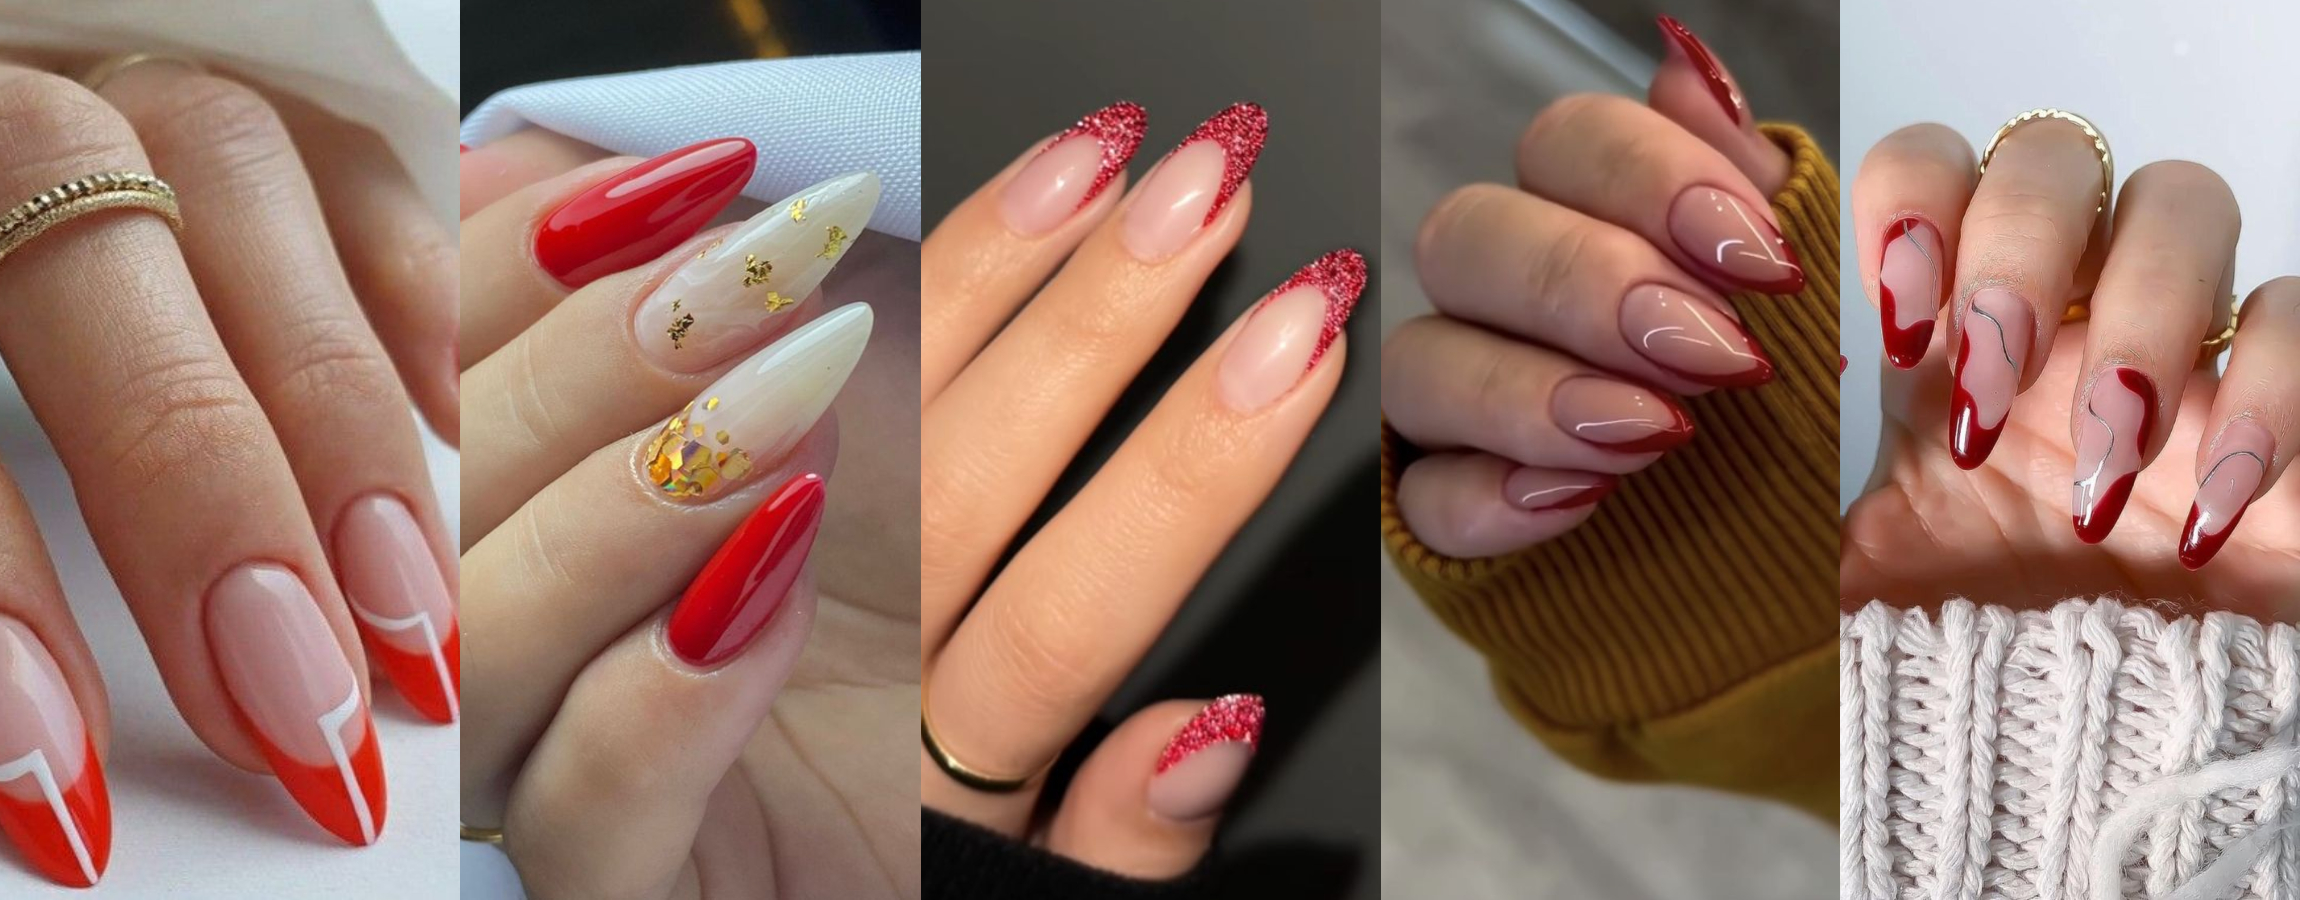 Diseños de uñas acrílicas rojas